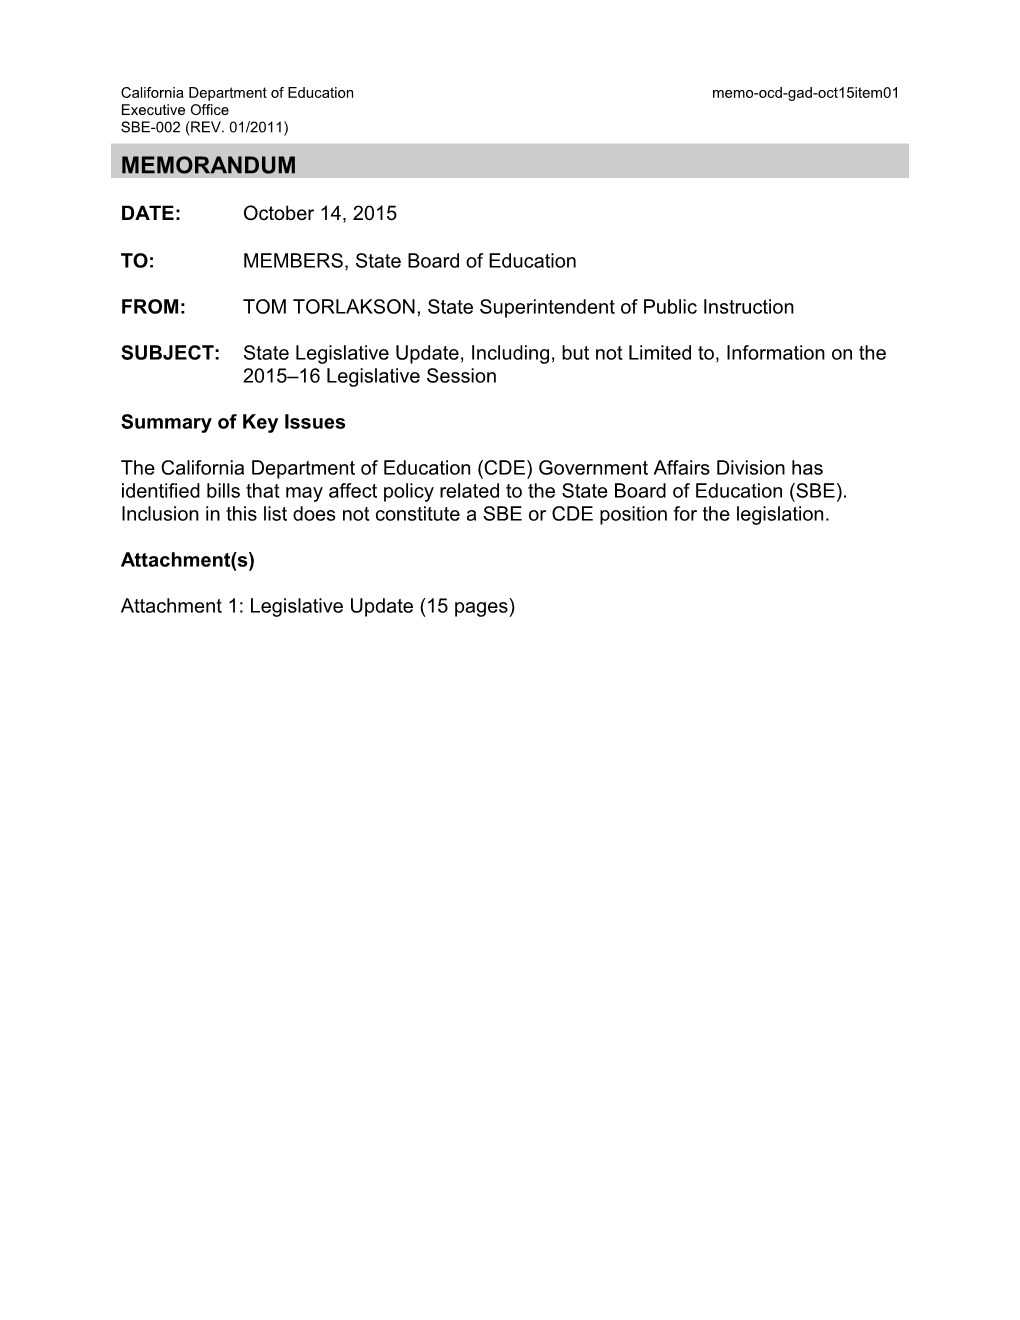 October 2015 Memo EXEC OCD Item 01 - Information Memorandum (CA State Board of Education)